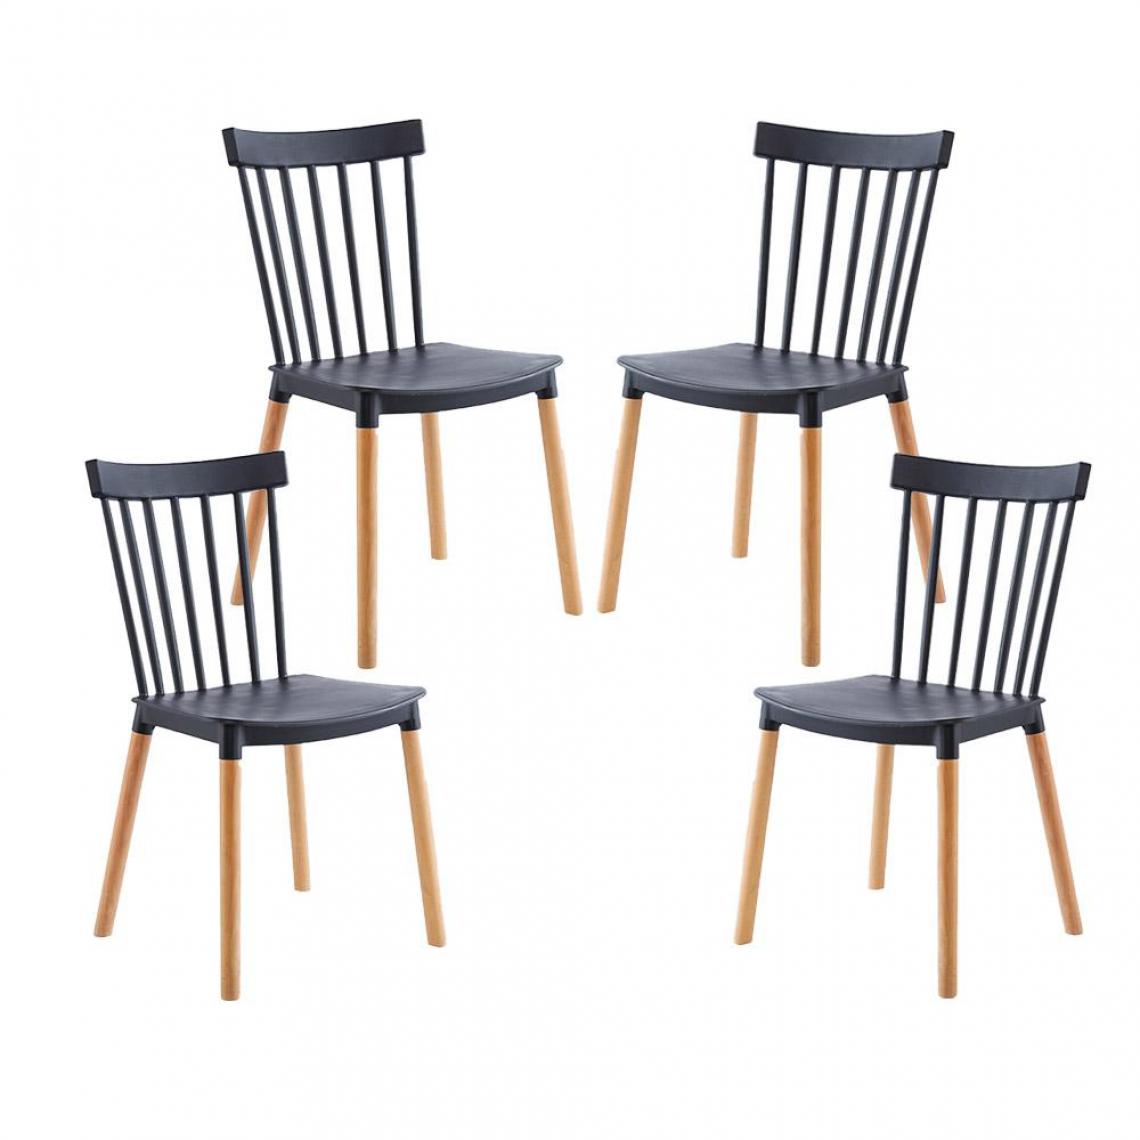 Red Deco - Lot de 4 chaises VICTORIA noir pieds en bois style scandinave - Chaises